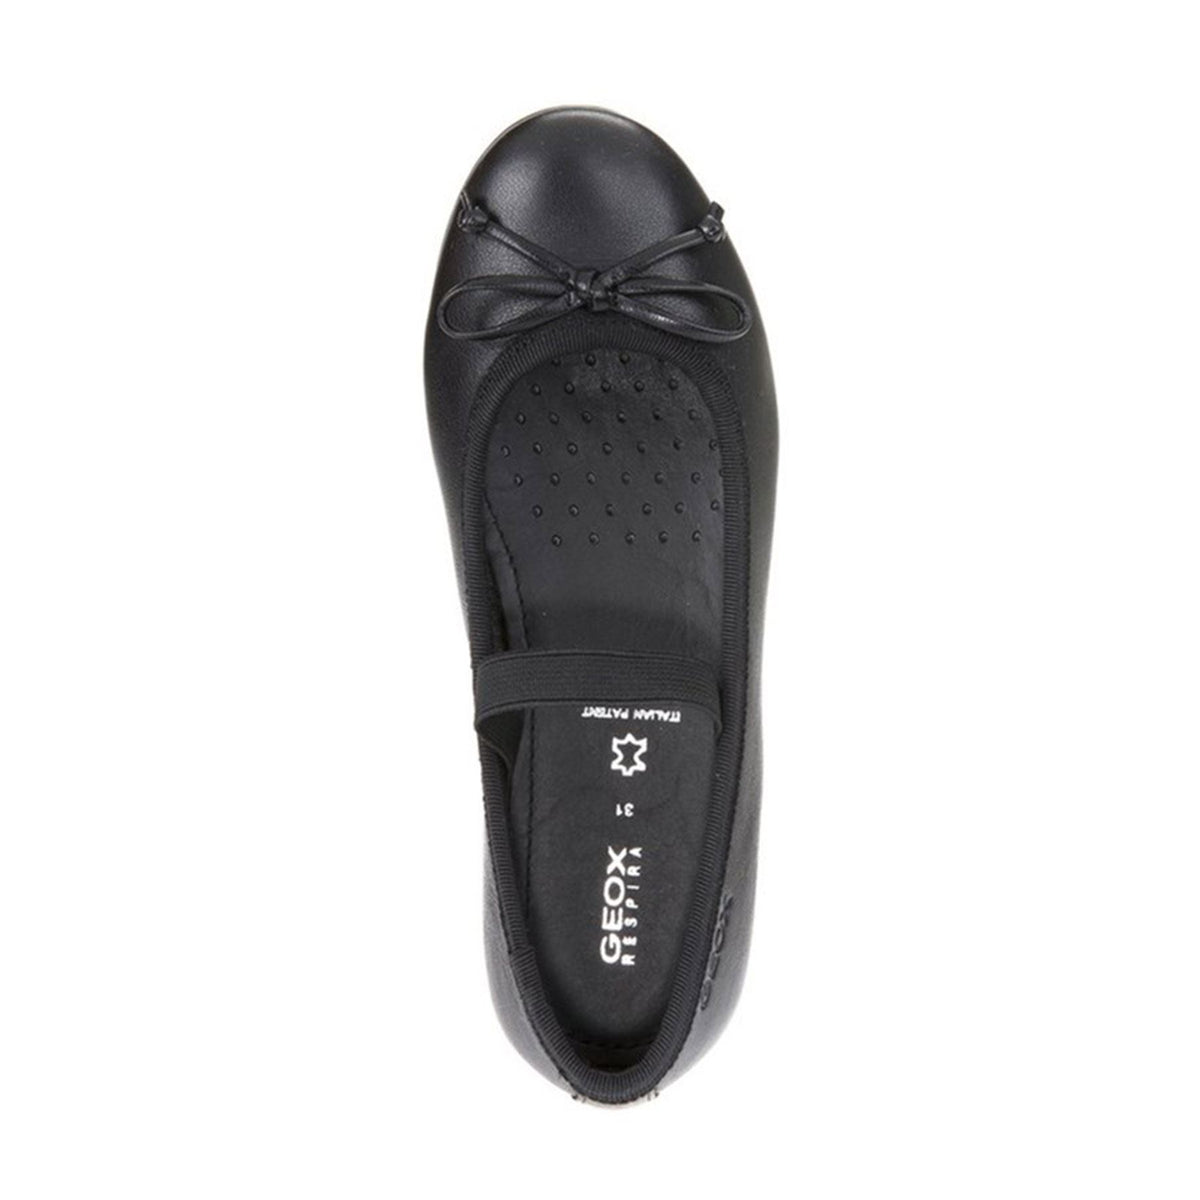 Geox Girls Black Elasticated Plie' School Shoes